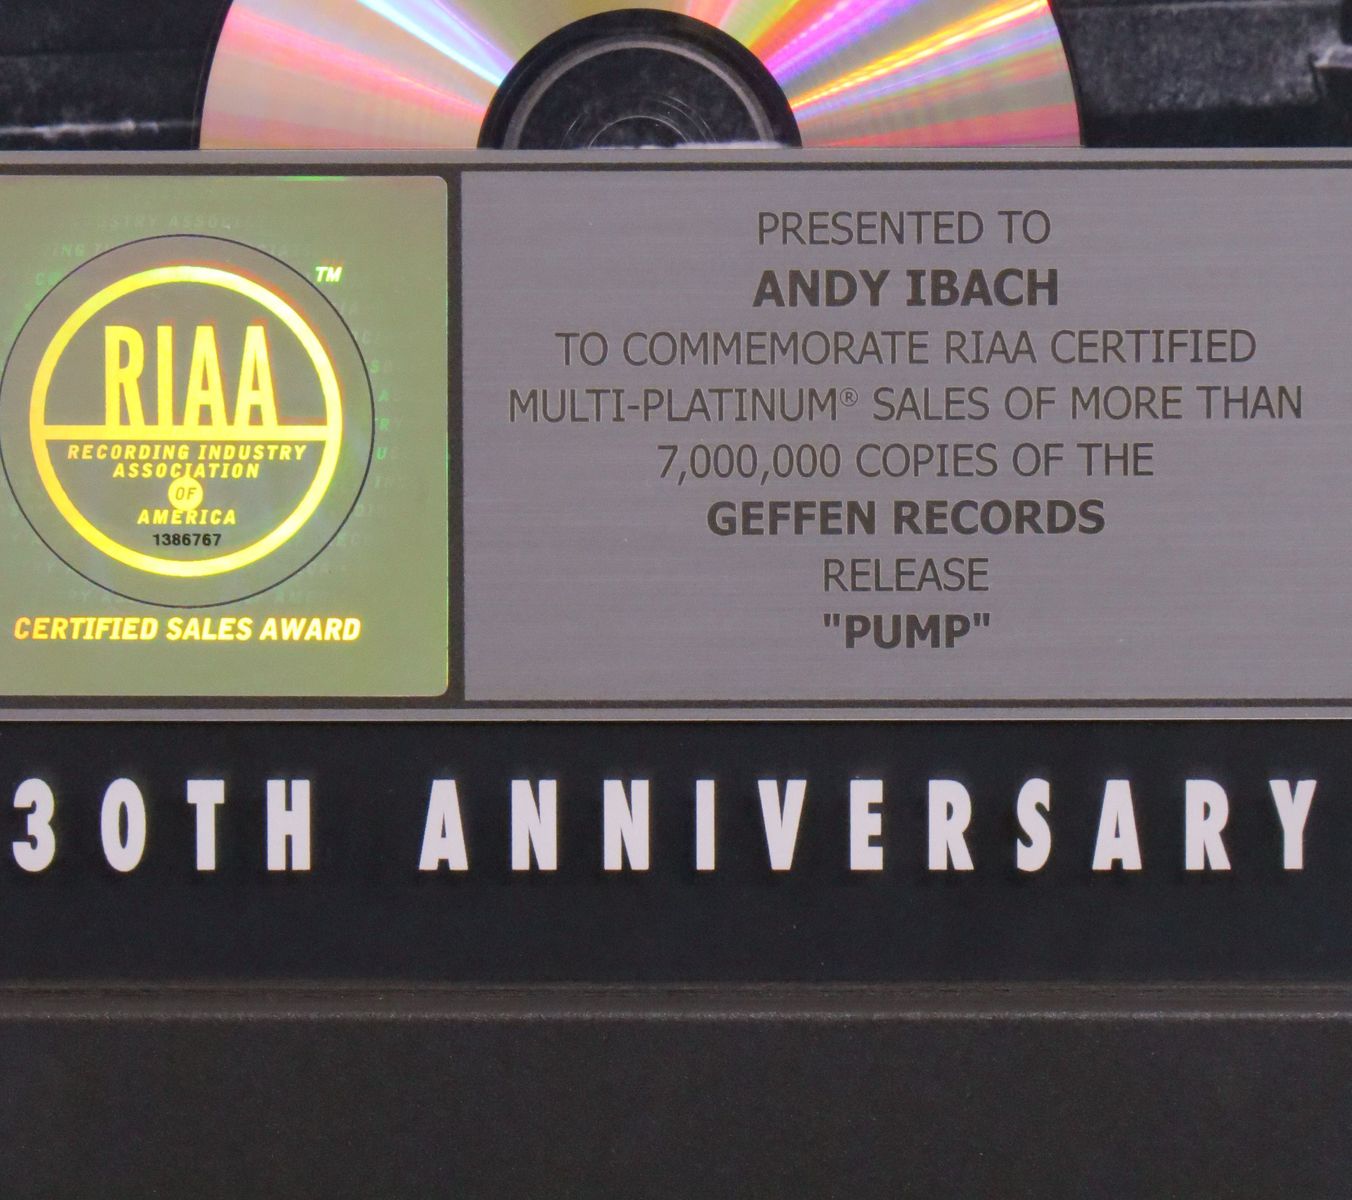 Pump RIAA Multi-Platinum Award